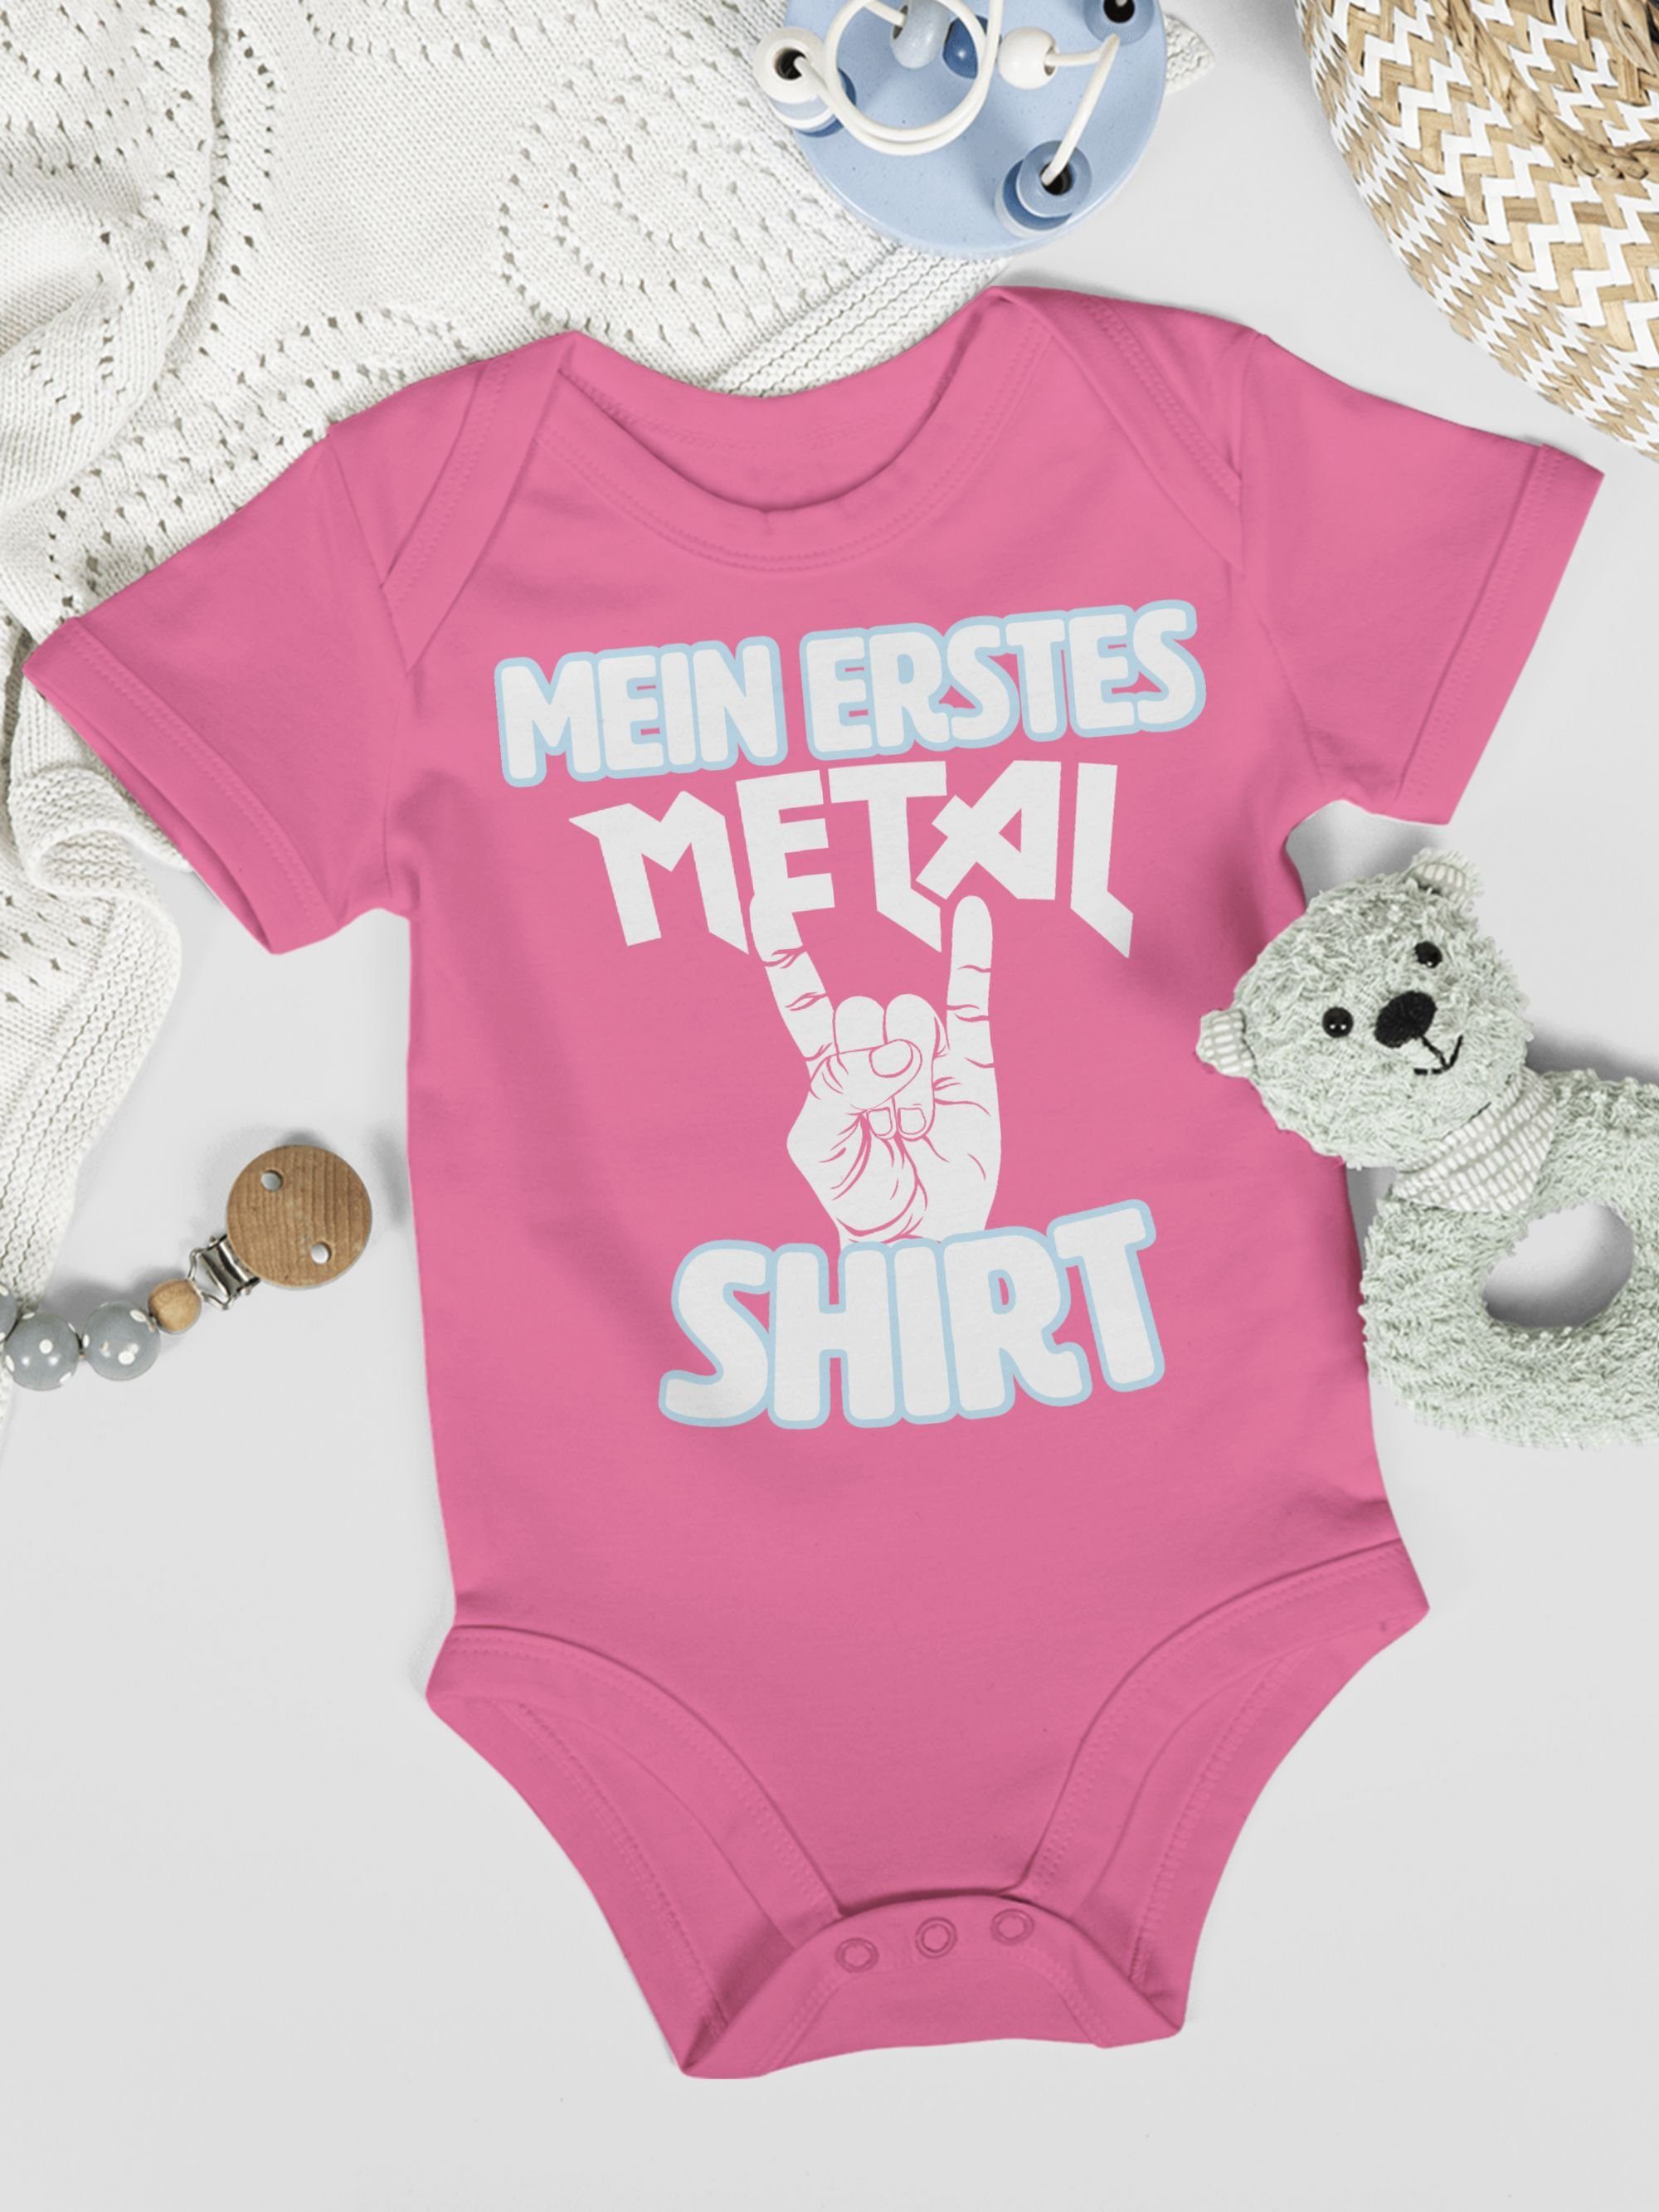 Mein erstes Metal Shirtbody Baby Shirt Sprüche 3 Shirtracer weiß Pink